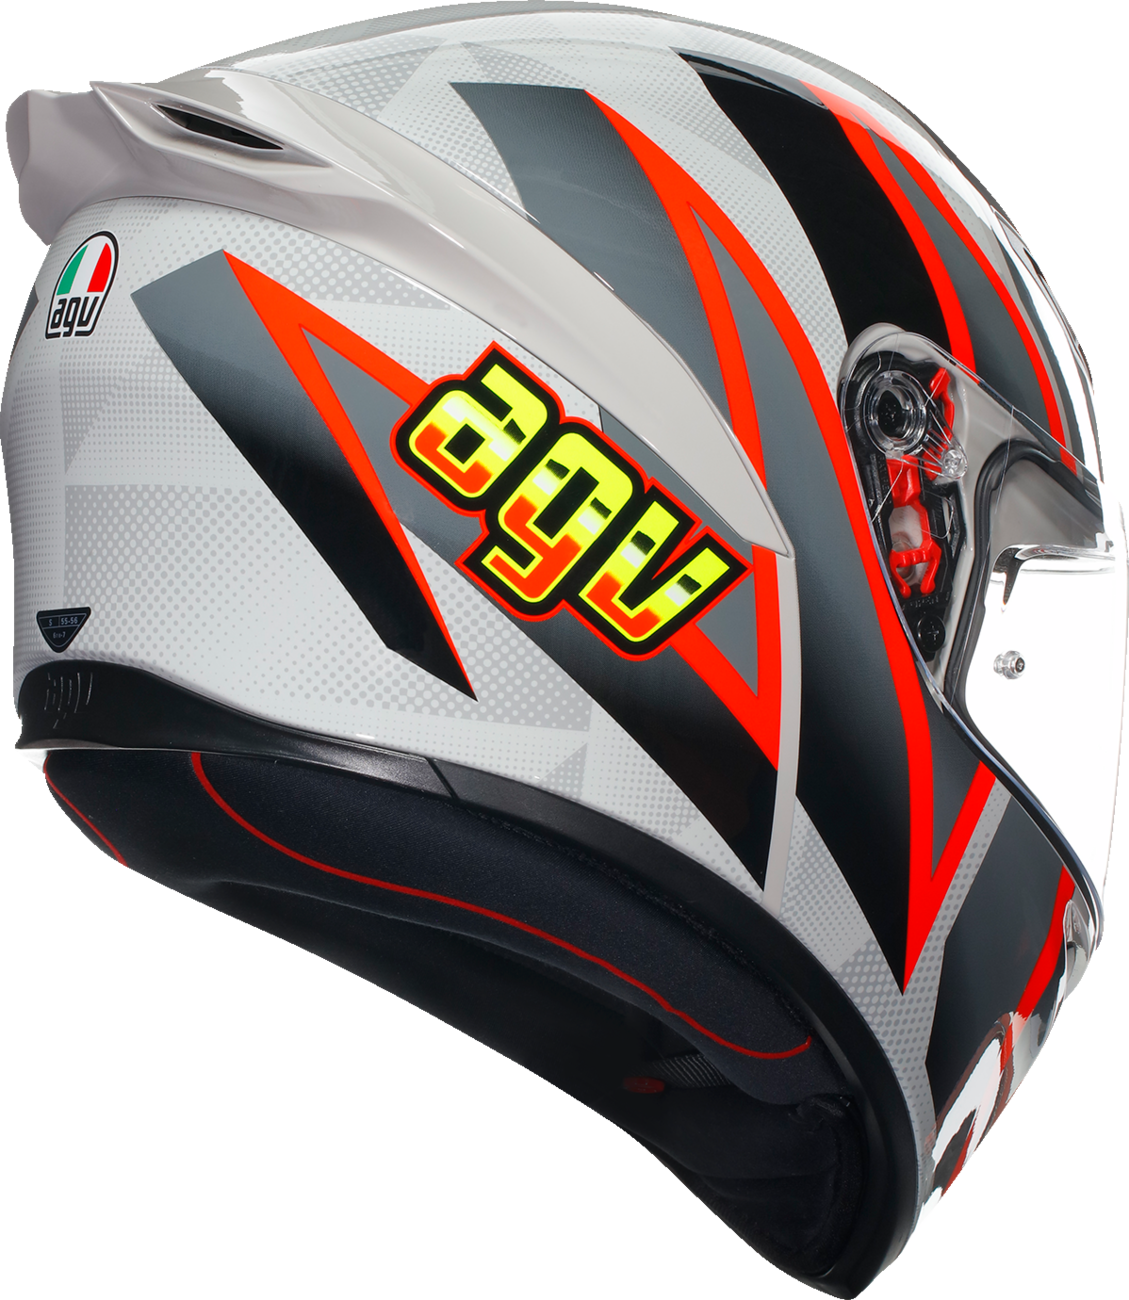 AGV K1 S Helmet - Blipper - Gray/Red - Large 2118394003030L